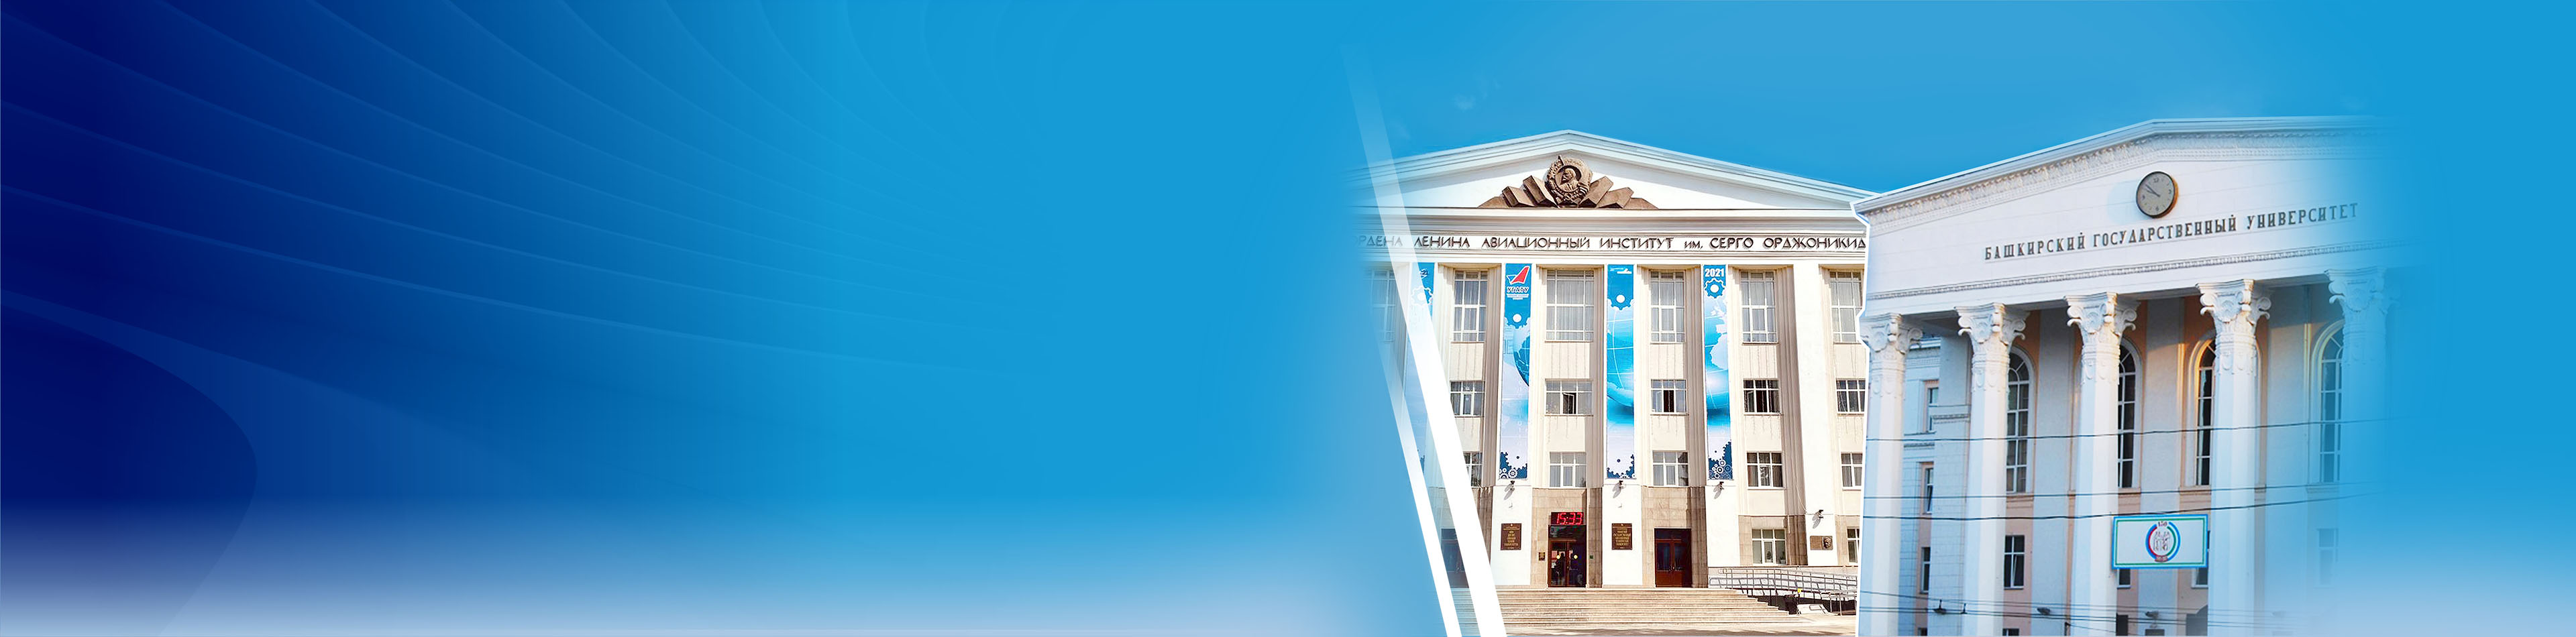 UUST.RU - официальный сайт Уфимского университета науки и технологий